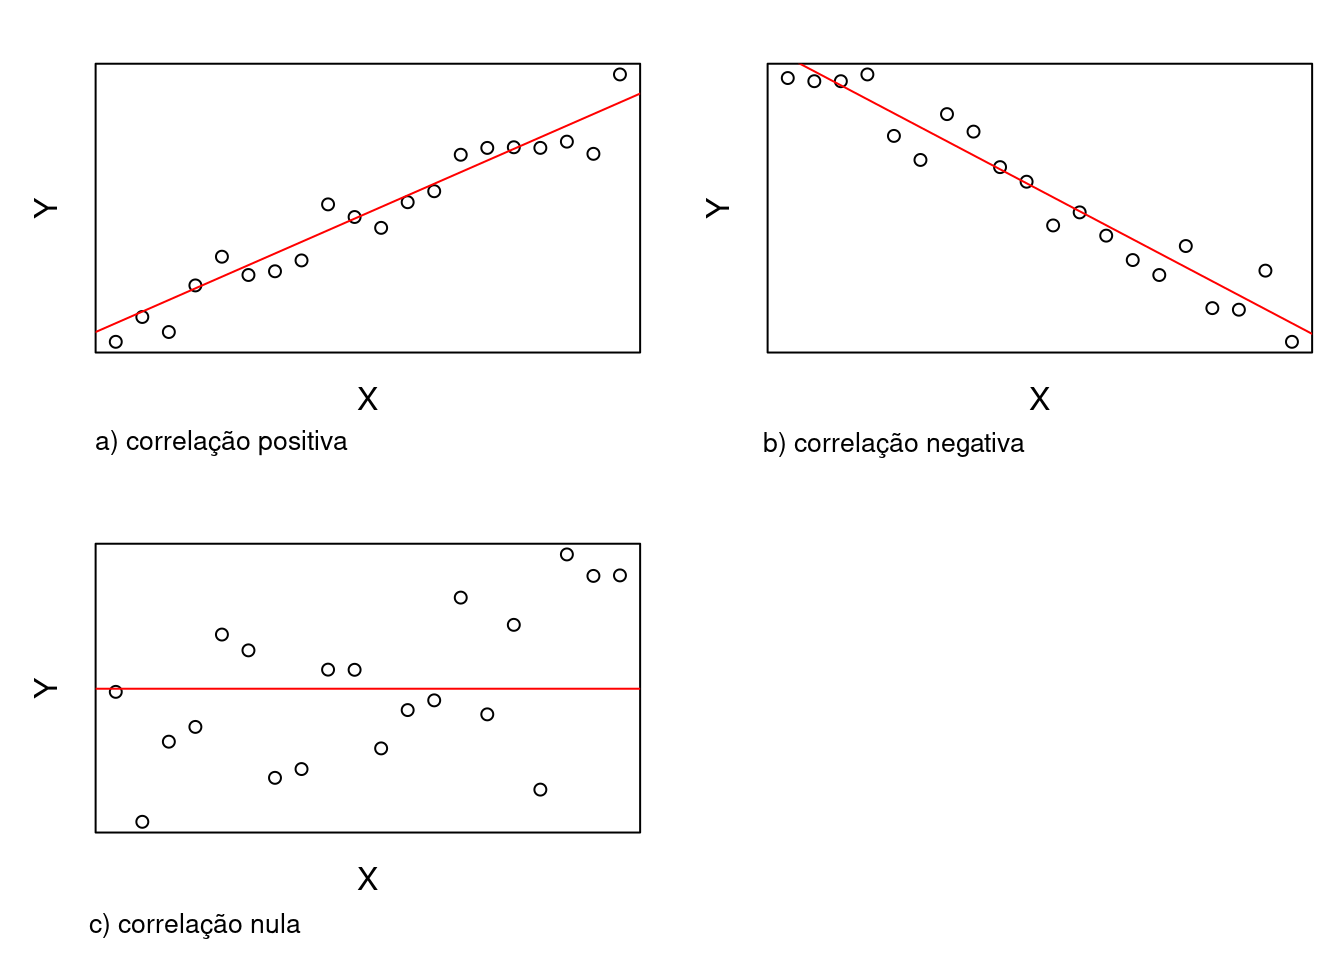 Relações lineares entre as variáveis x e y: a) correlação linear positiva, b) correlação linear negativa, c) correlação nula.